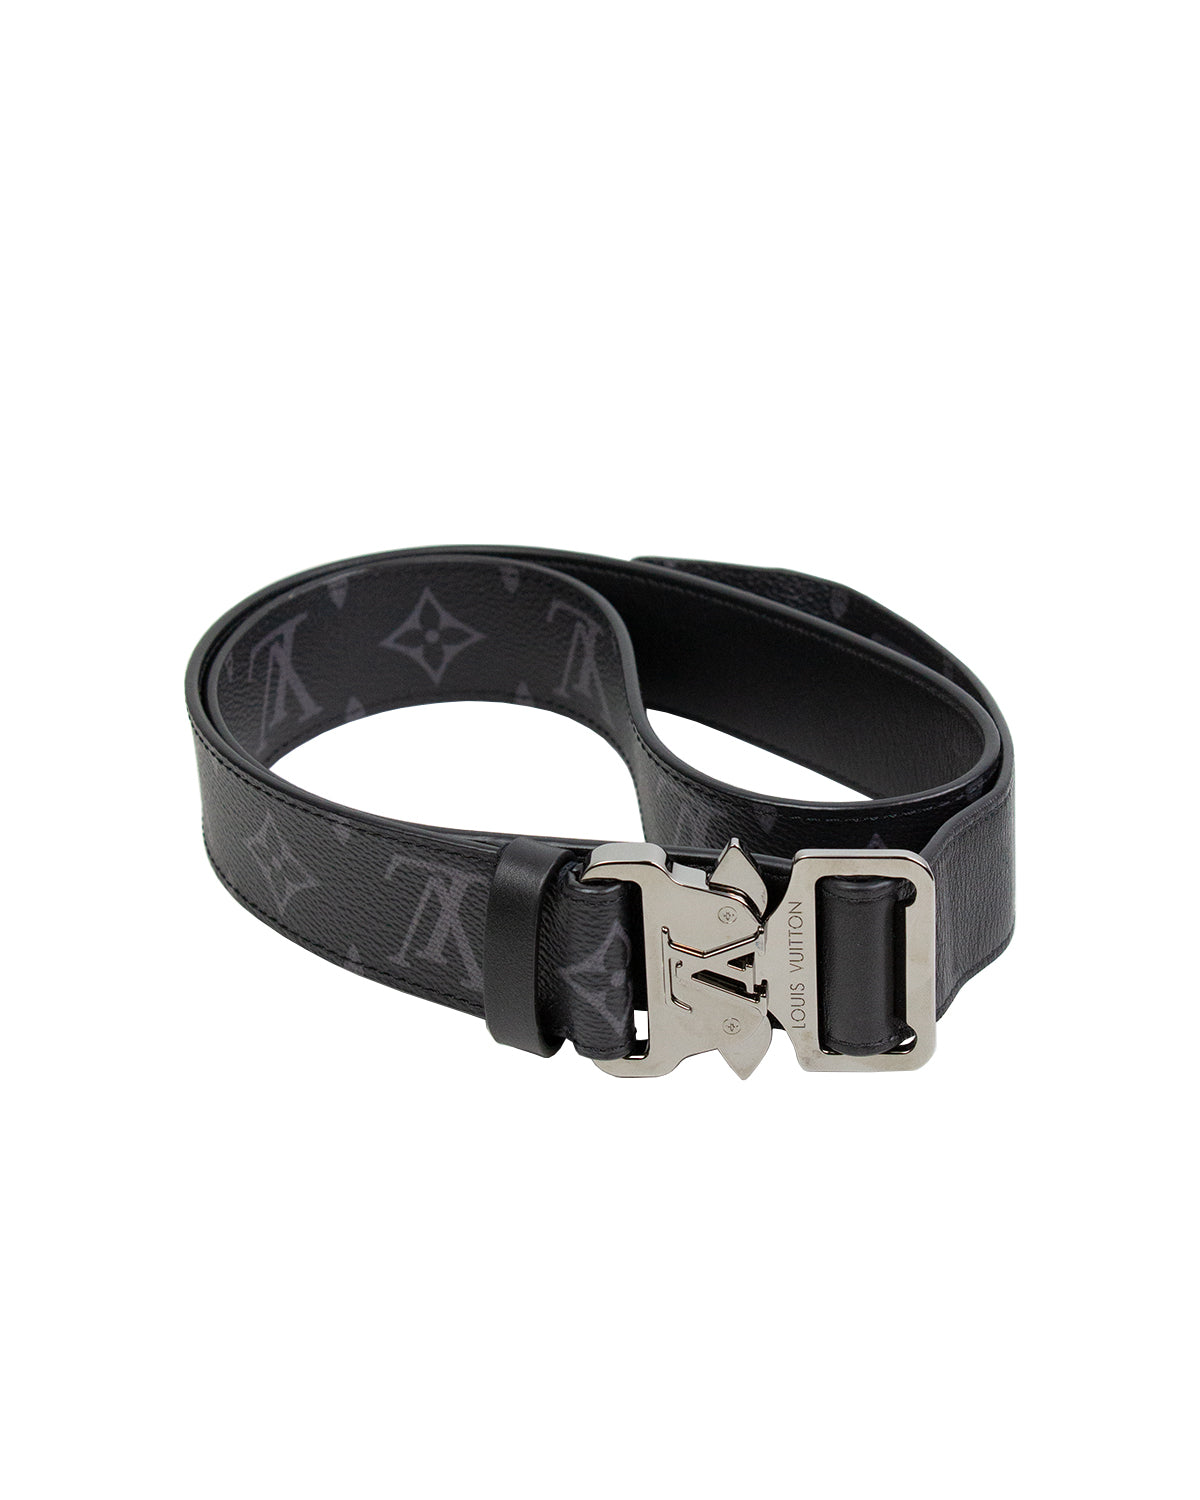 Louis Vuitton Black Leather Tilt Monogram Belt 44/90, myGemma